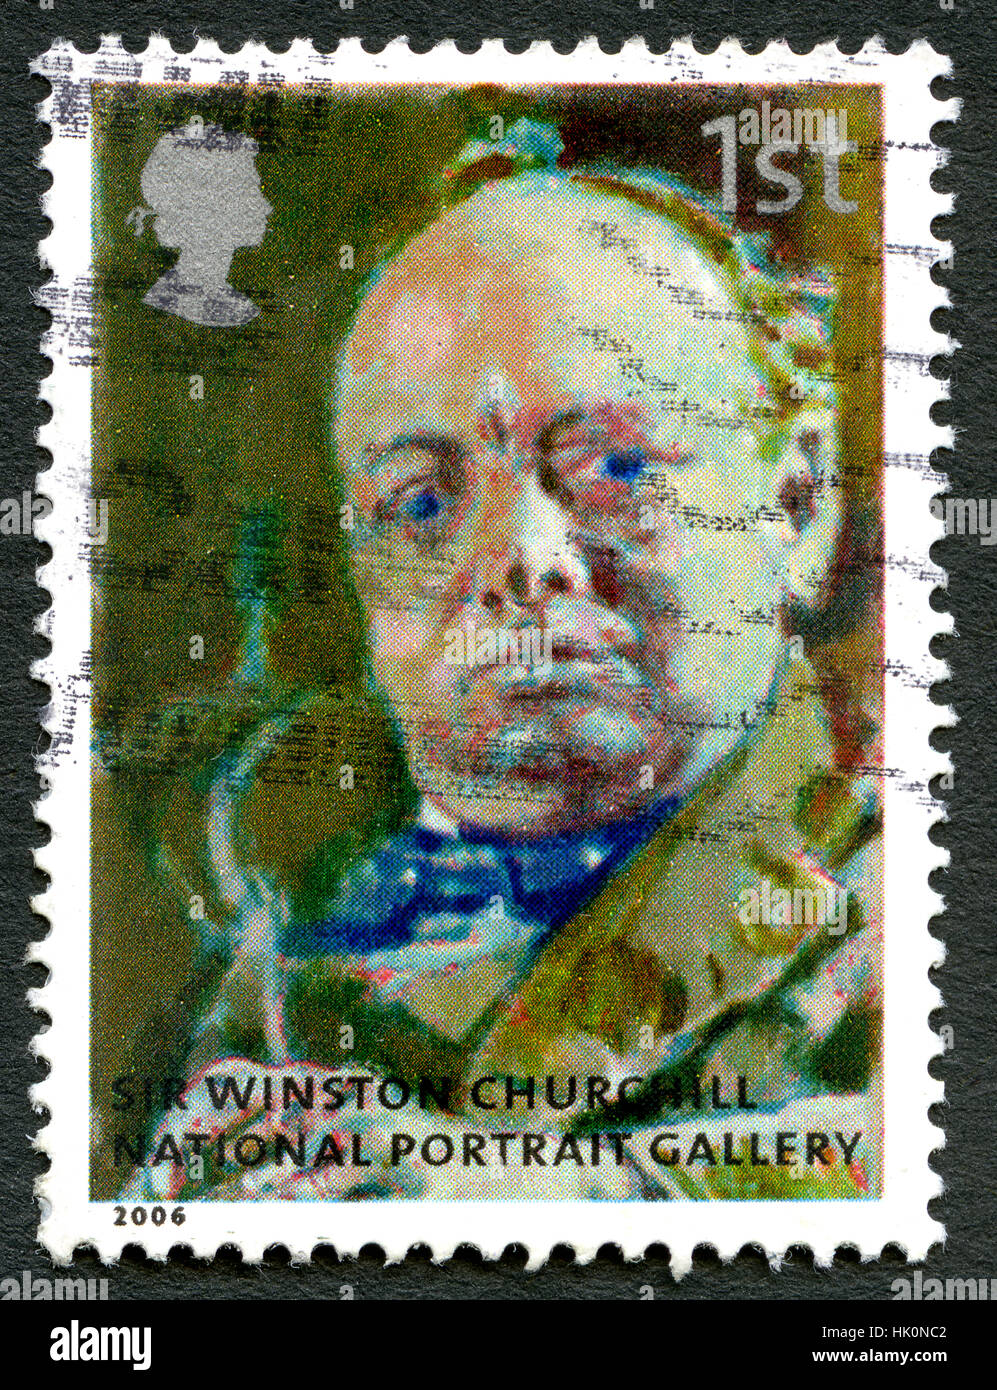 Großbritannien - CIRCA 2006: Eine gebrauchte Briefmarke aus dem Vereinigten Königreich, zeigt ein Porträt der historischen Figur Sir Winston Churchill, die auf dem Display in der Stockfoto